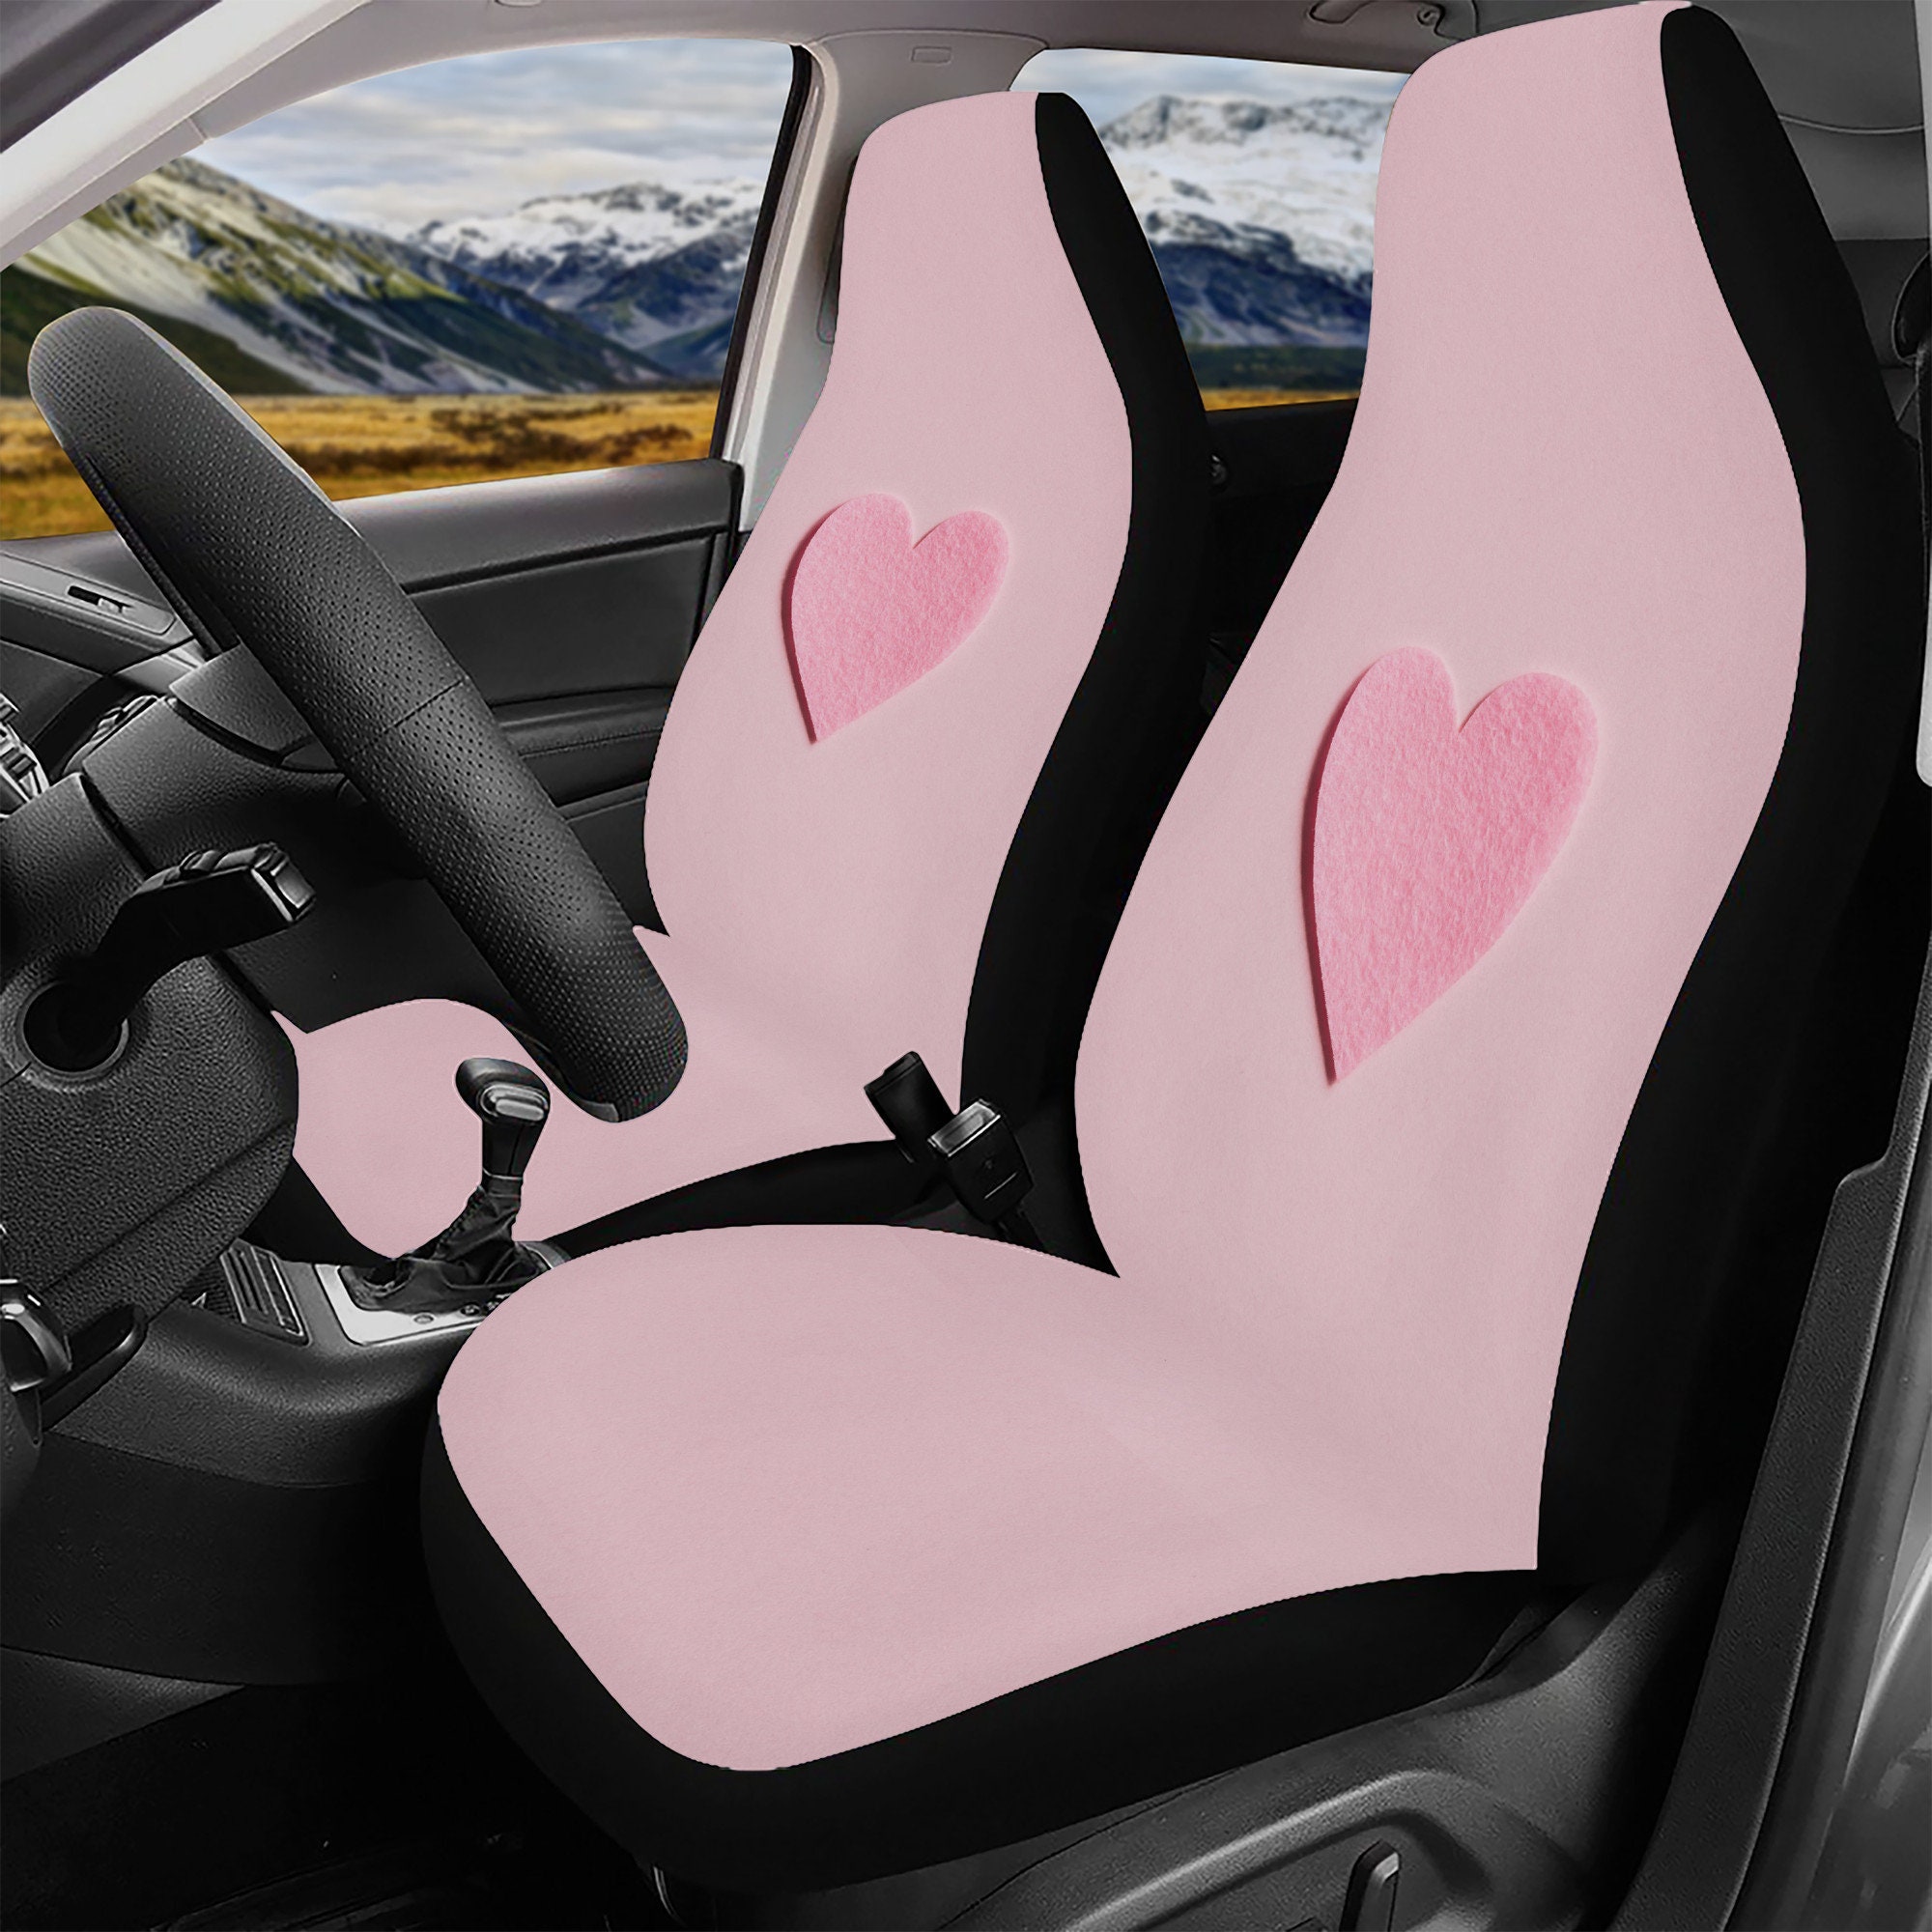 Rosa Fahrzeug-Sitzbezüge für Auto für Frauen, Pink Faux Glitzer-Look  Front-Schalensitzbezug für Auto / Fahrzeug - Tolles neues Auto-Geschenk für  sie!